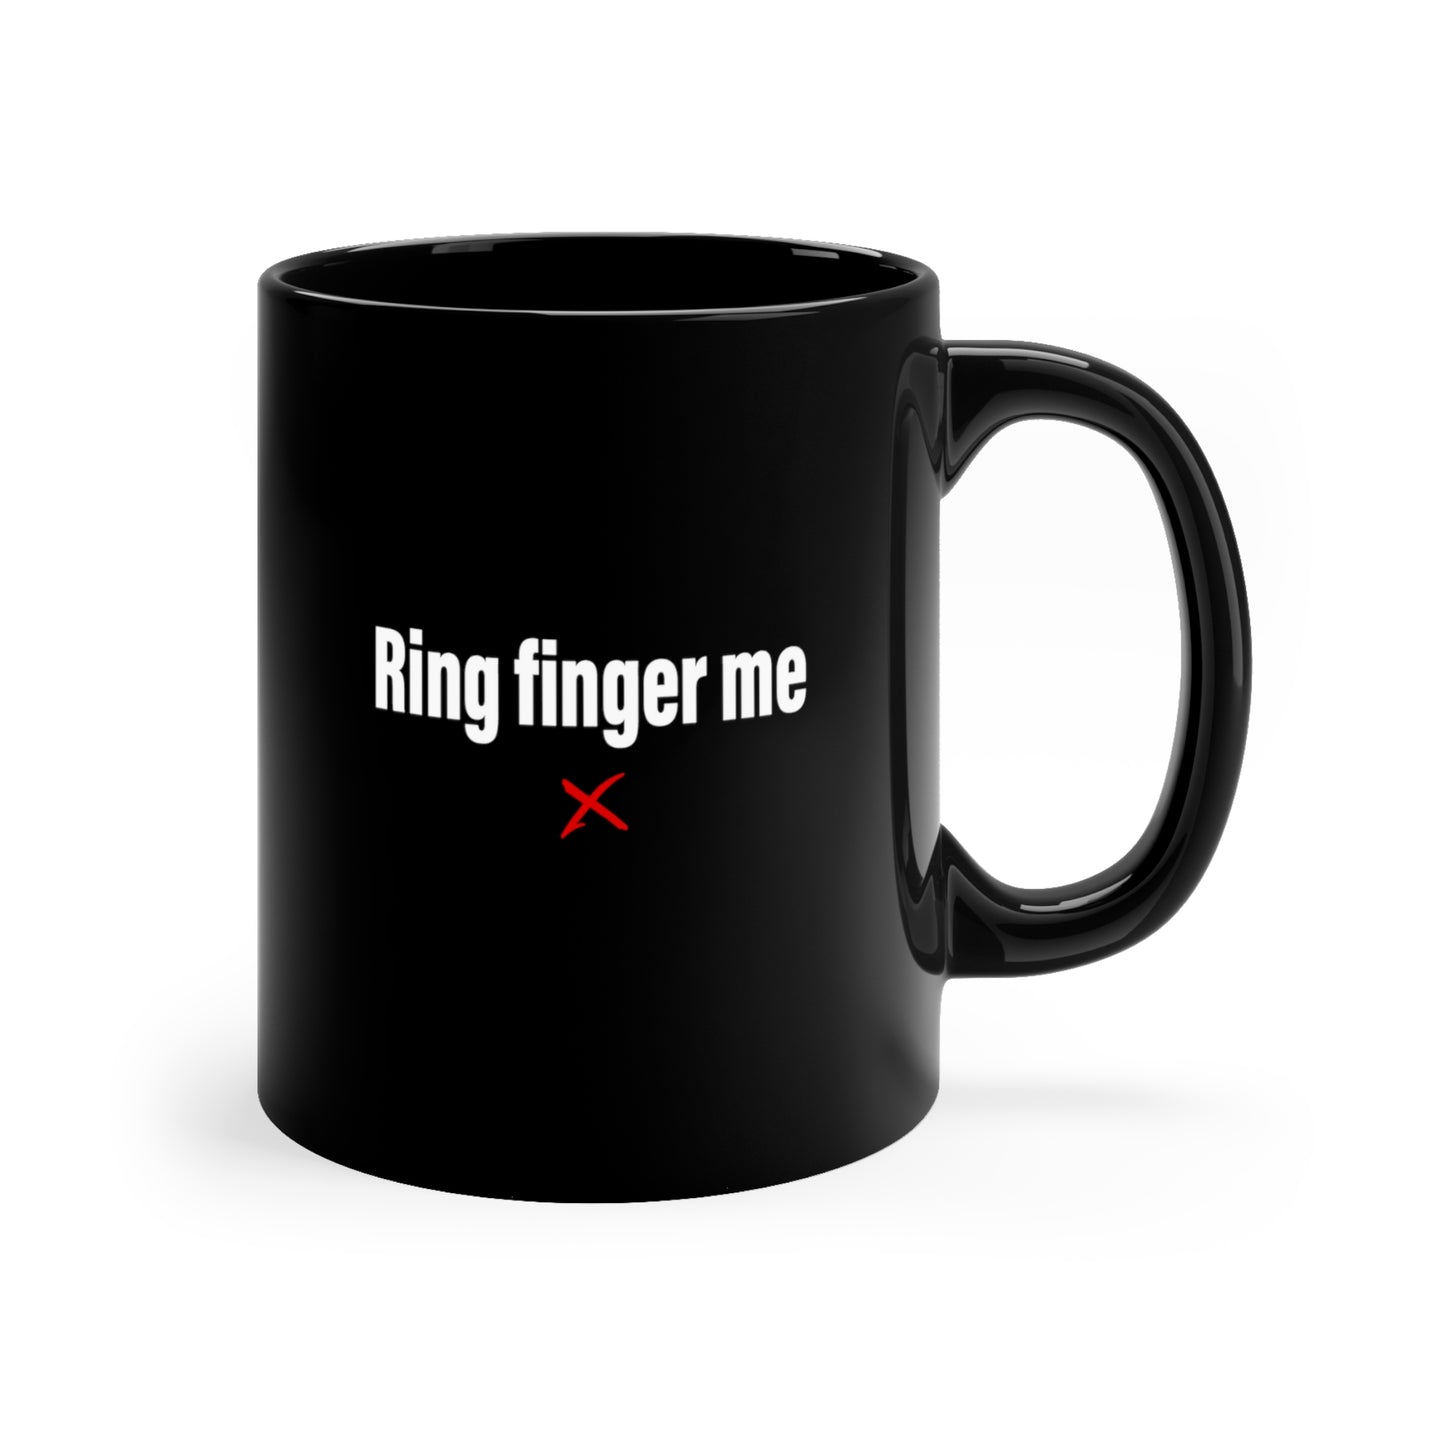 Ring finger me - Mug